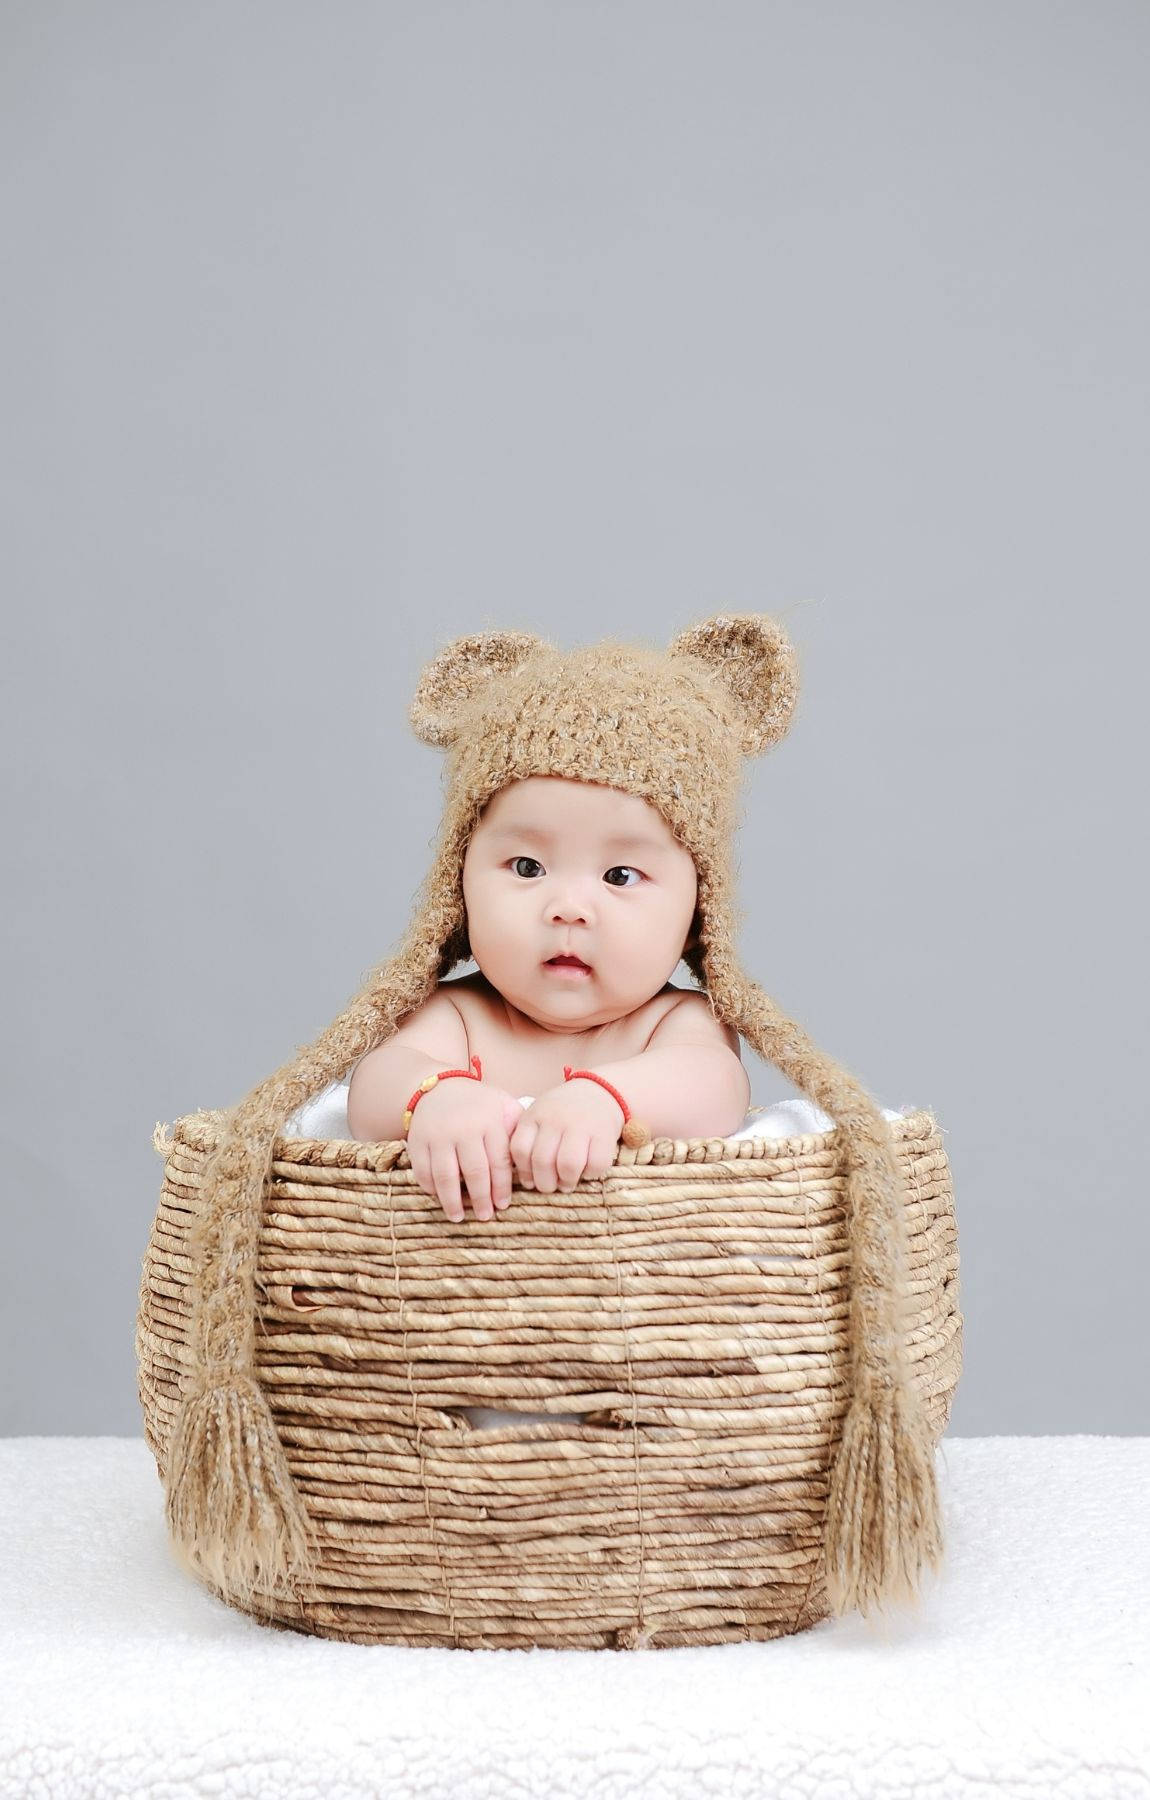 Bebisfotograferingspädbarn I En Korg Wallpaper